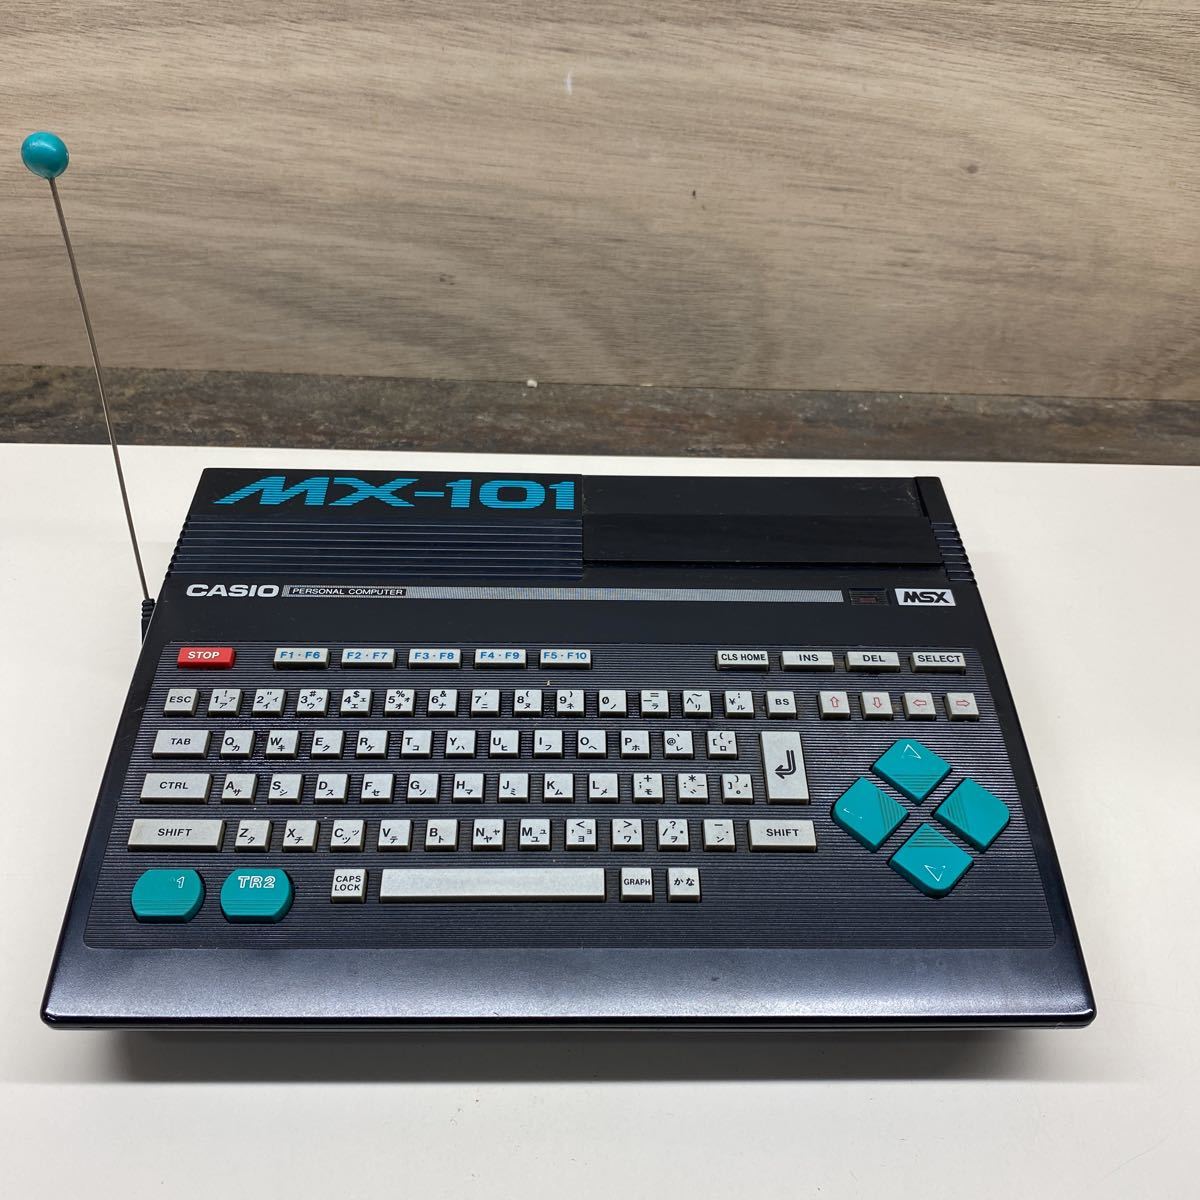 カシオ MSX CASIO パーソナルコンピューター MX-101 レトロ 本体のみ 